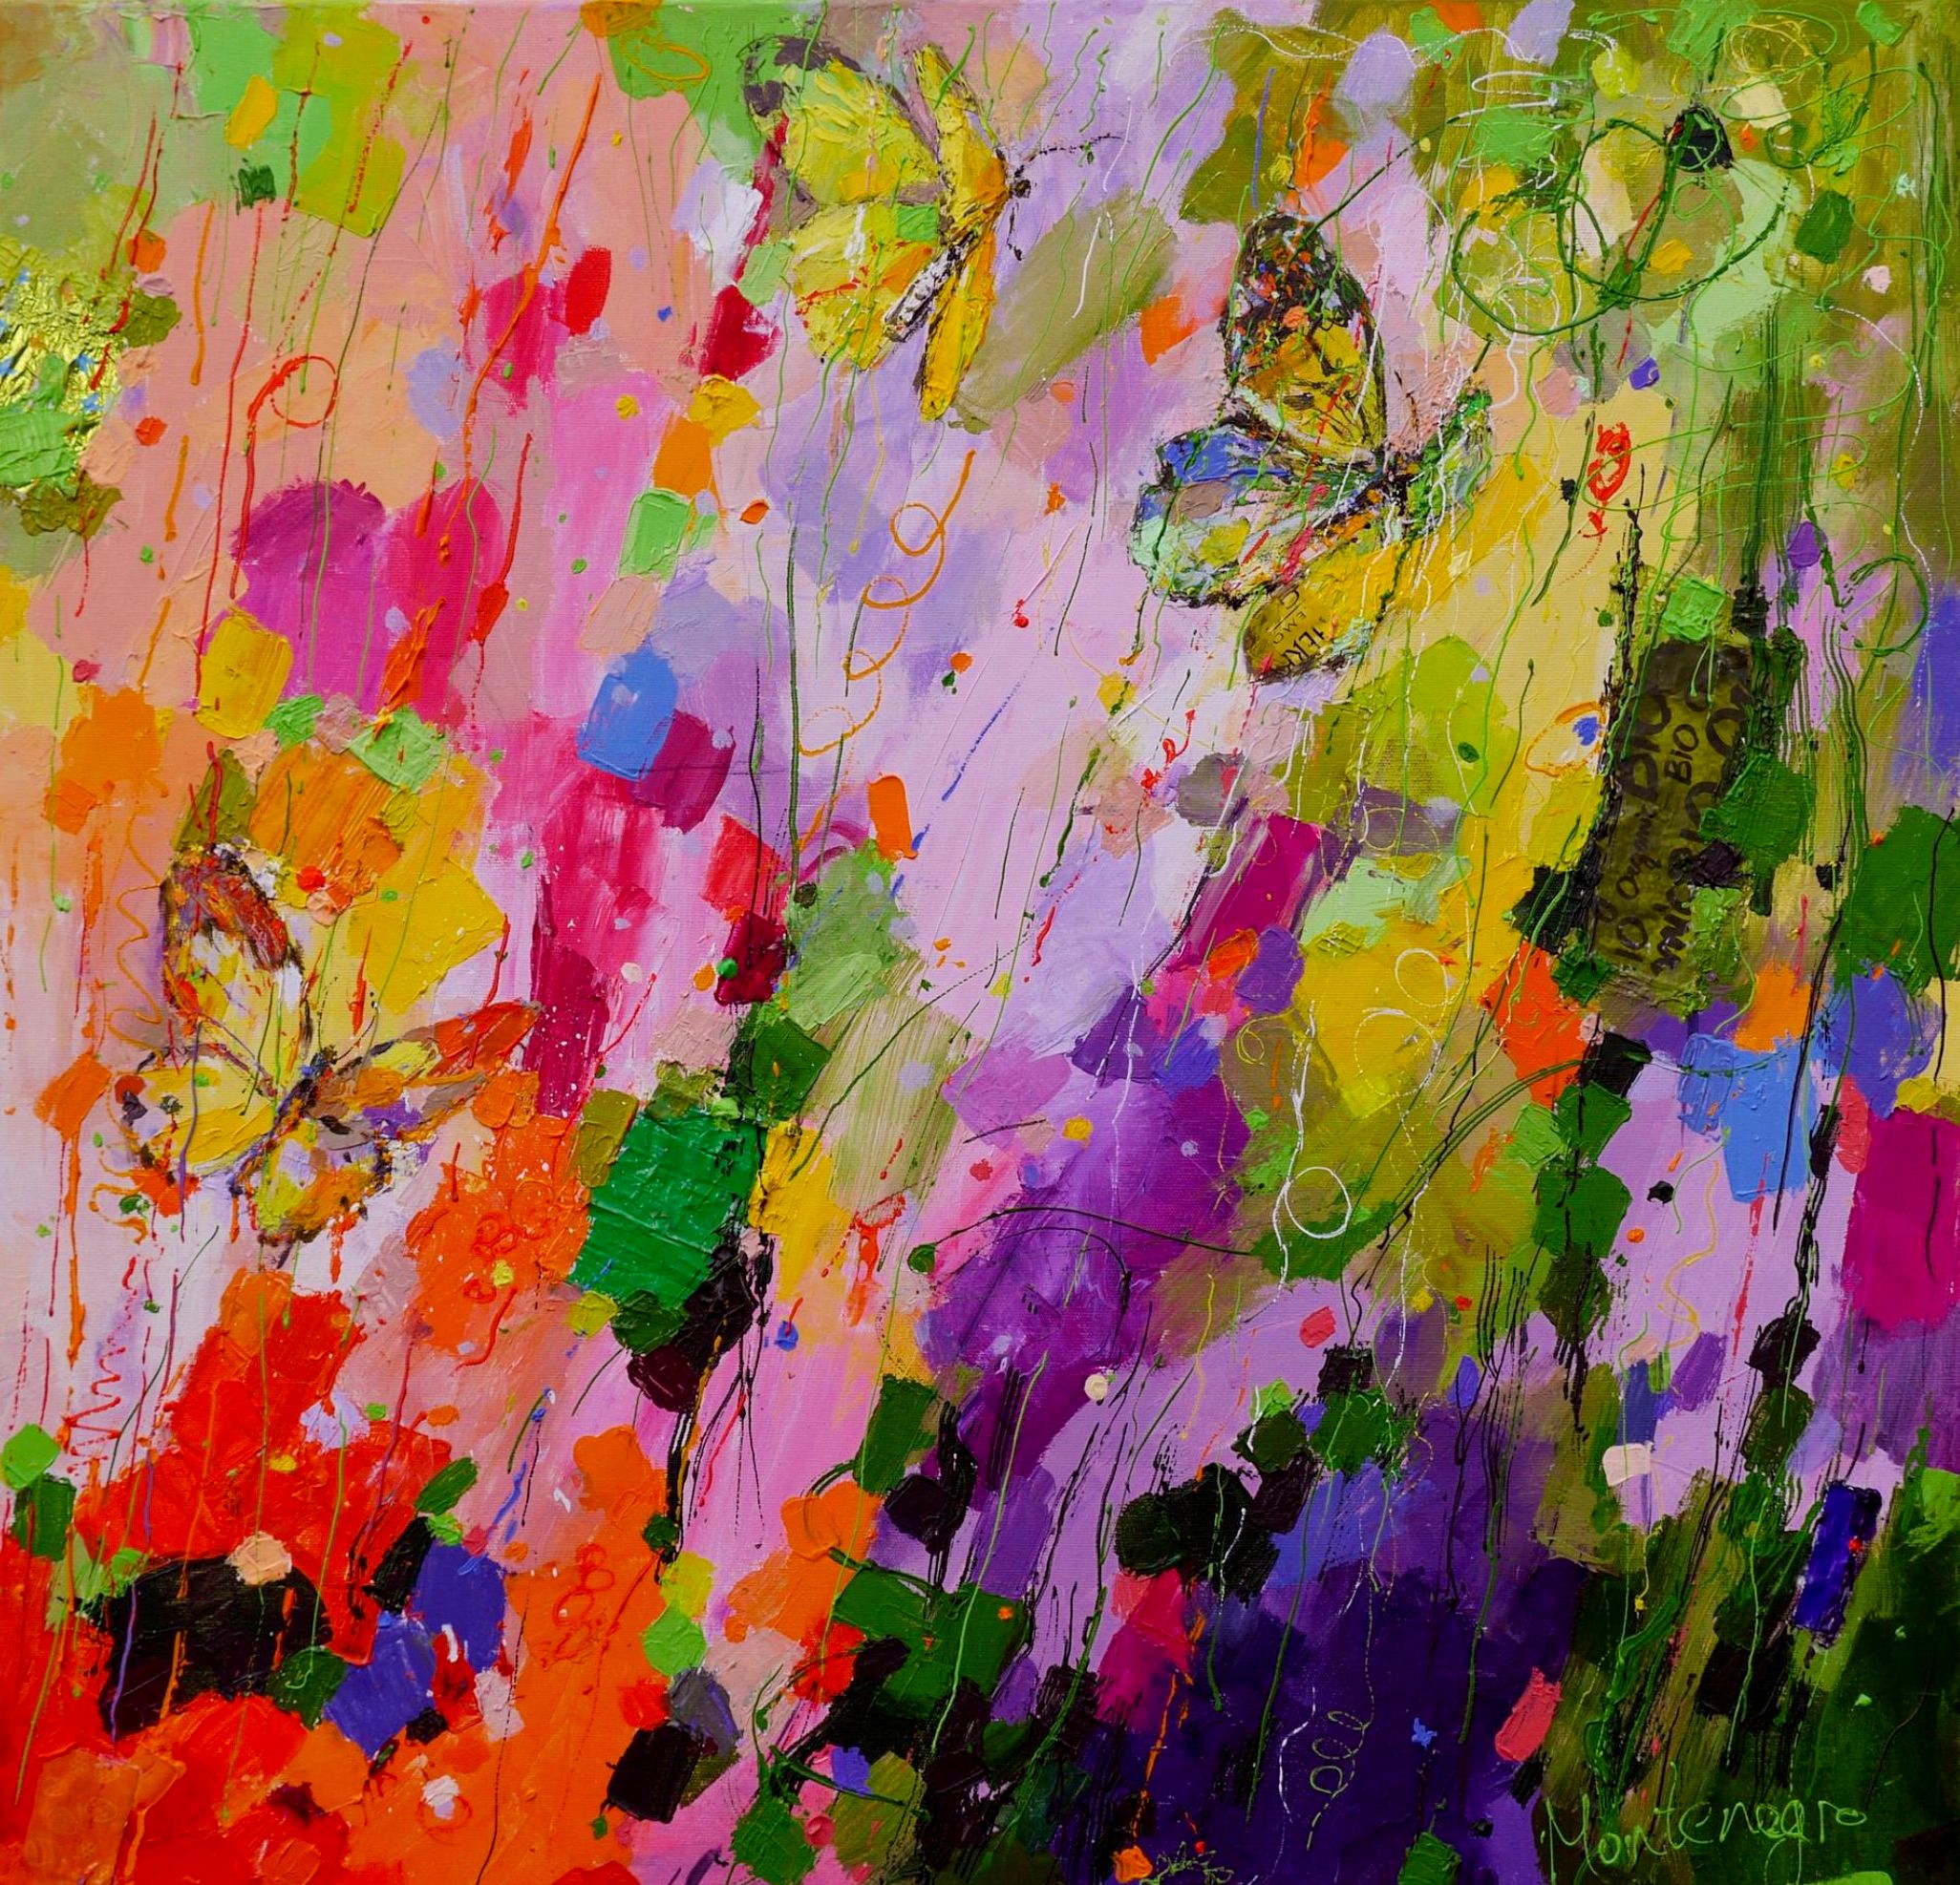 米里亚姆-黑山的表现主义绘画花卉和蝴蝶